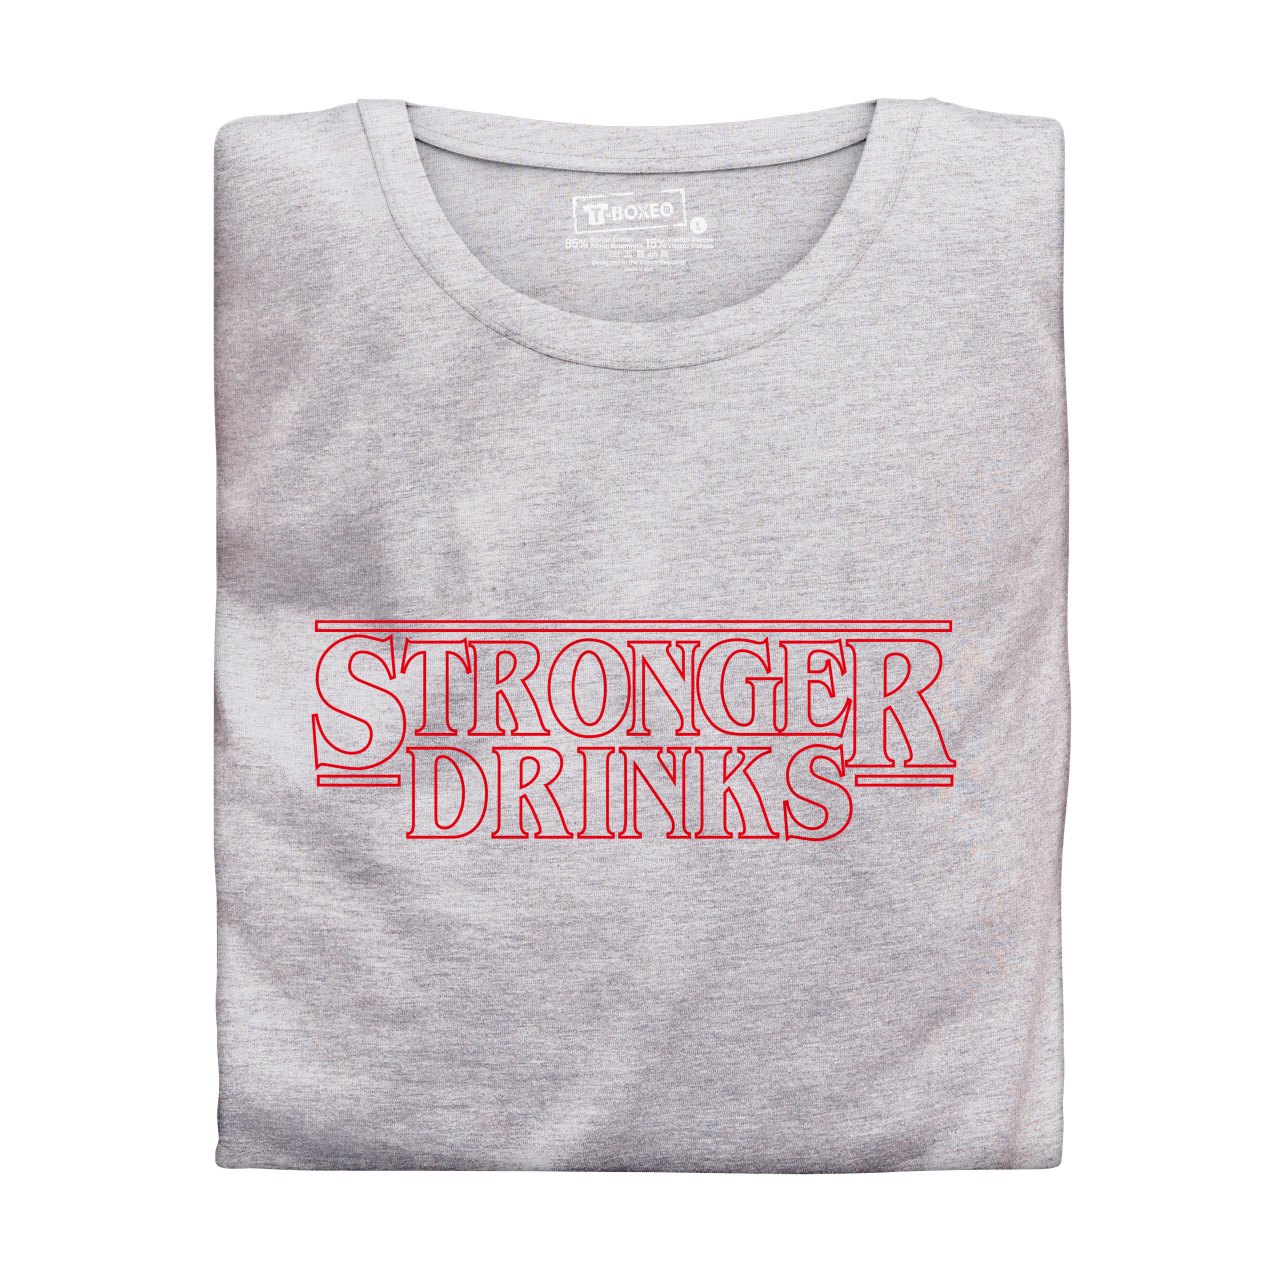 Pánské tričko s potiskem “Stronger Drinks"